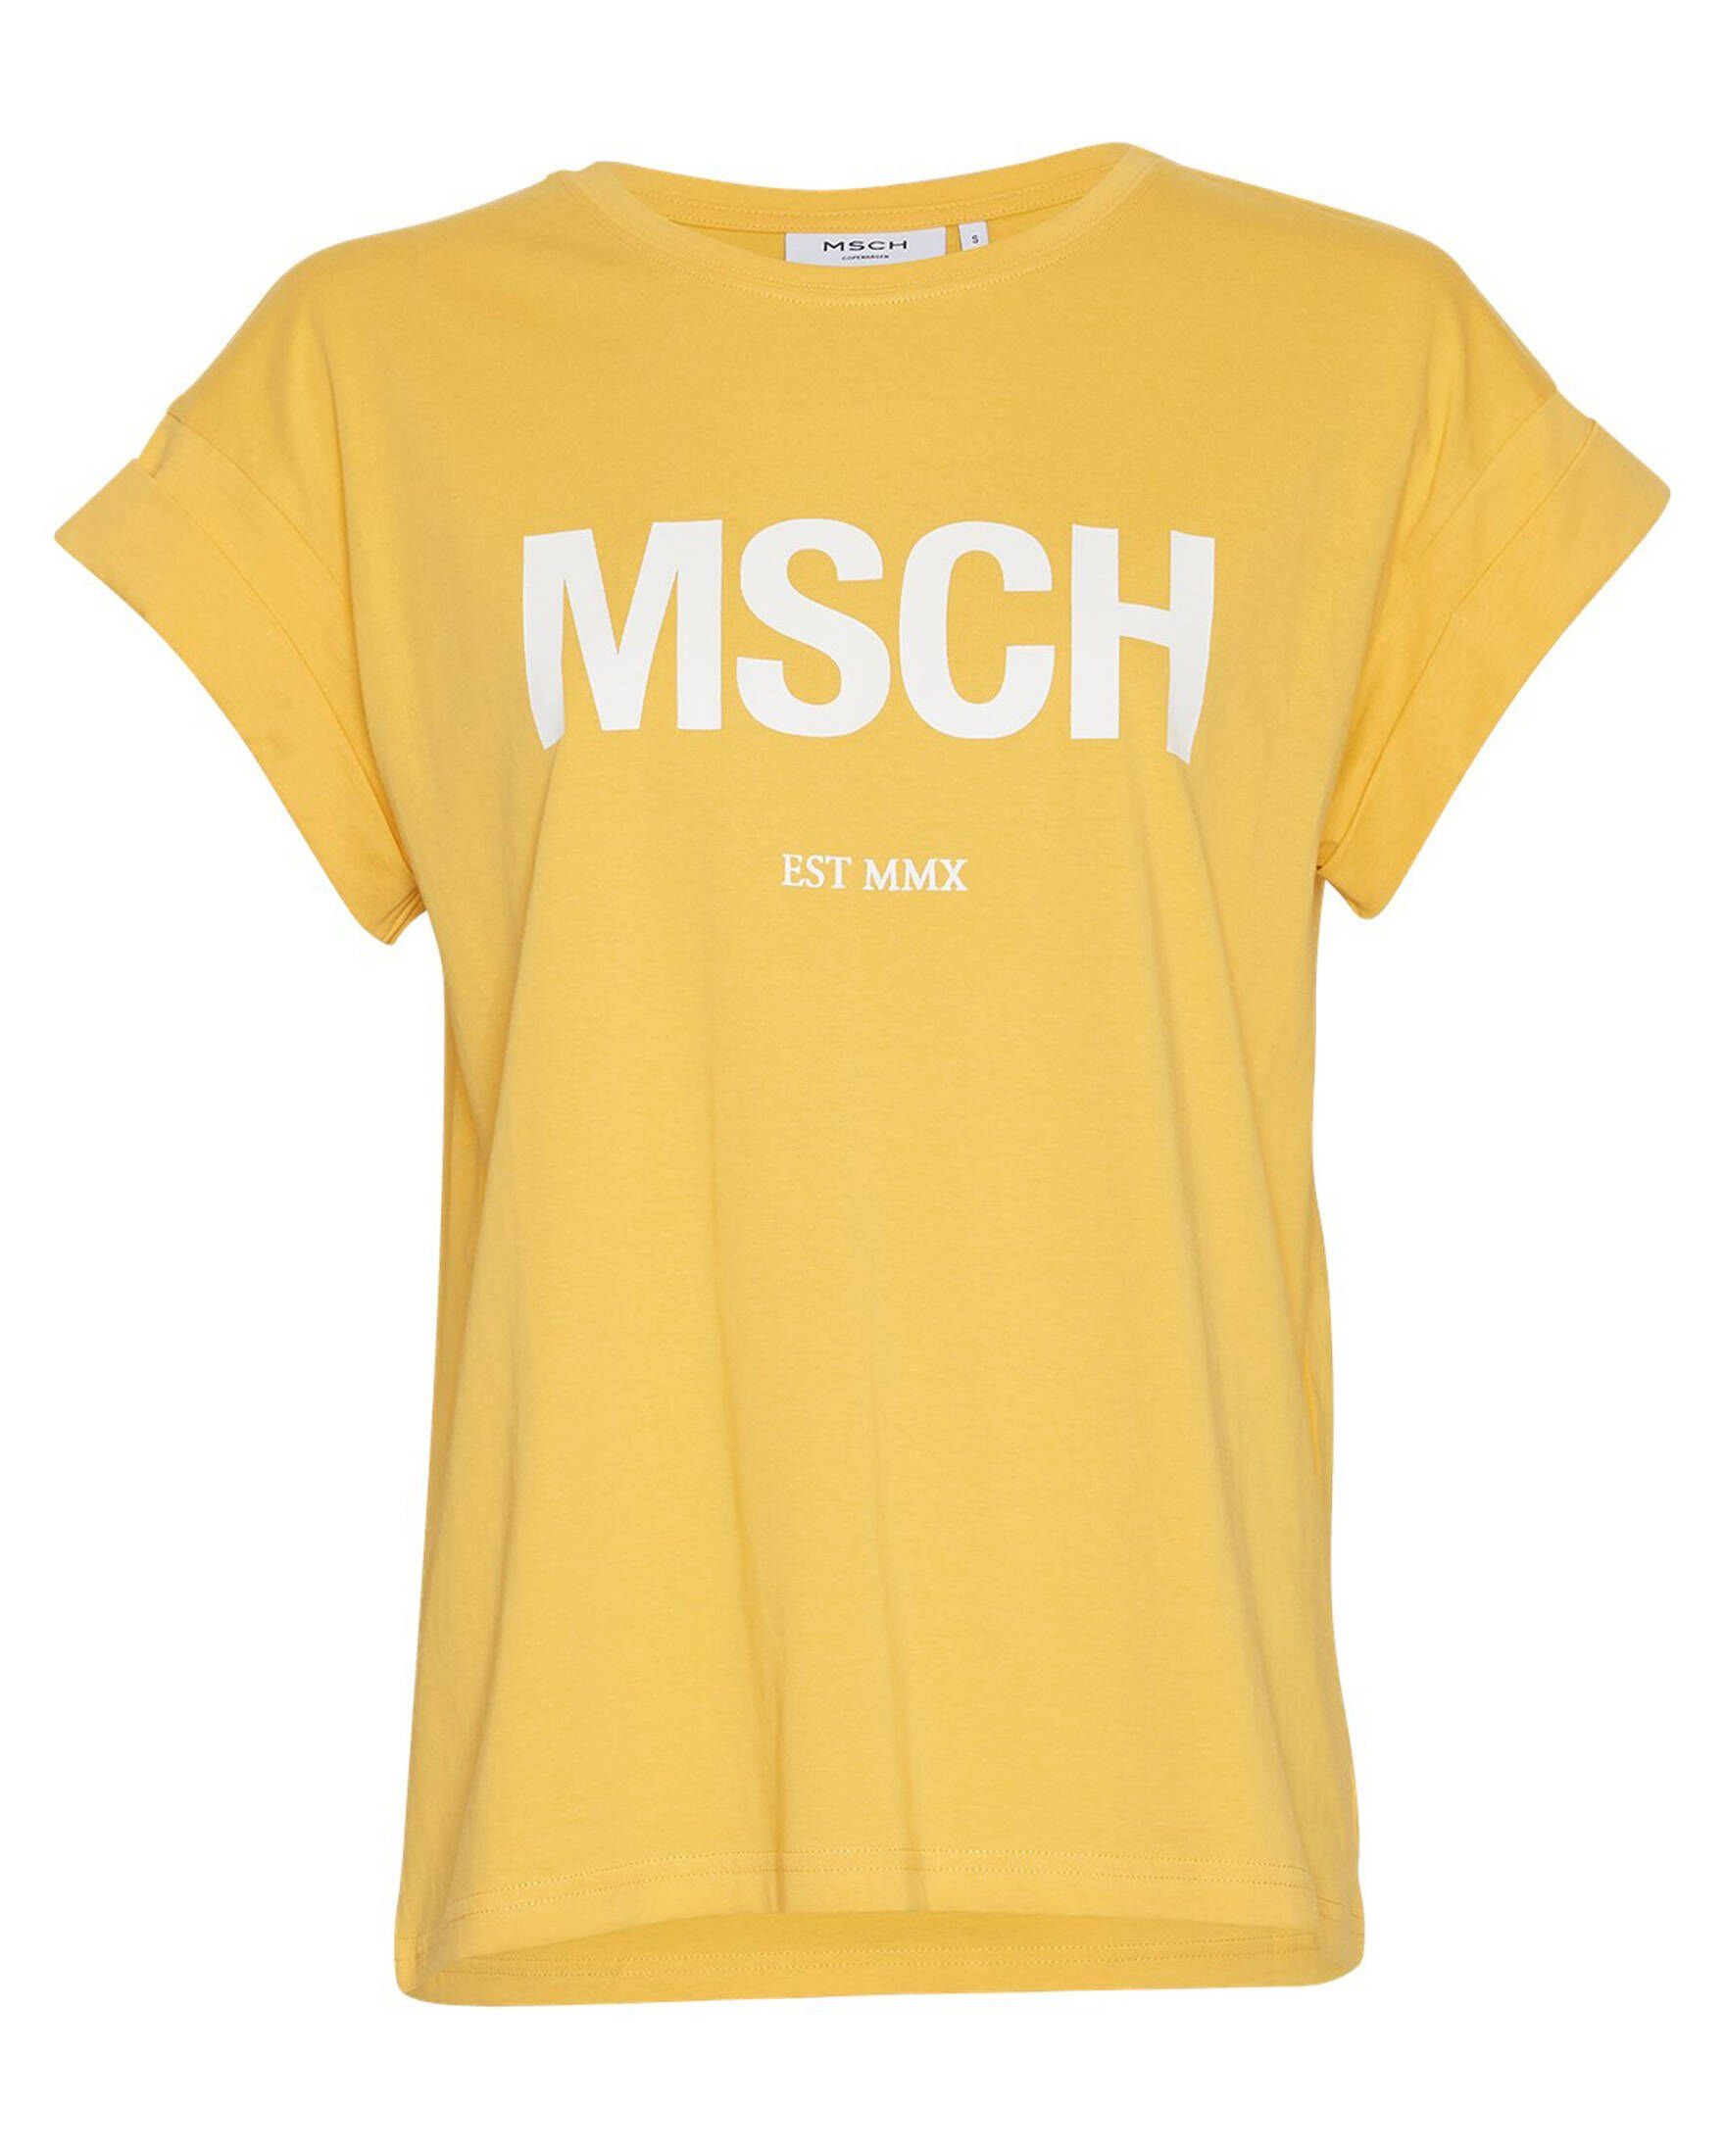 Goldene Shirts für Damen online kaufen » Goldshirts | OTTO